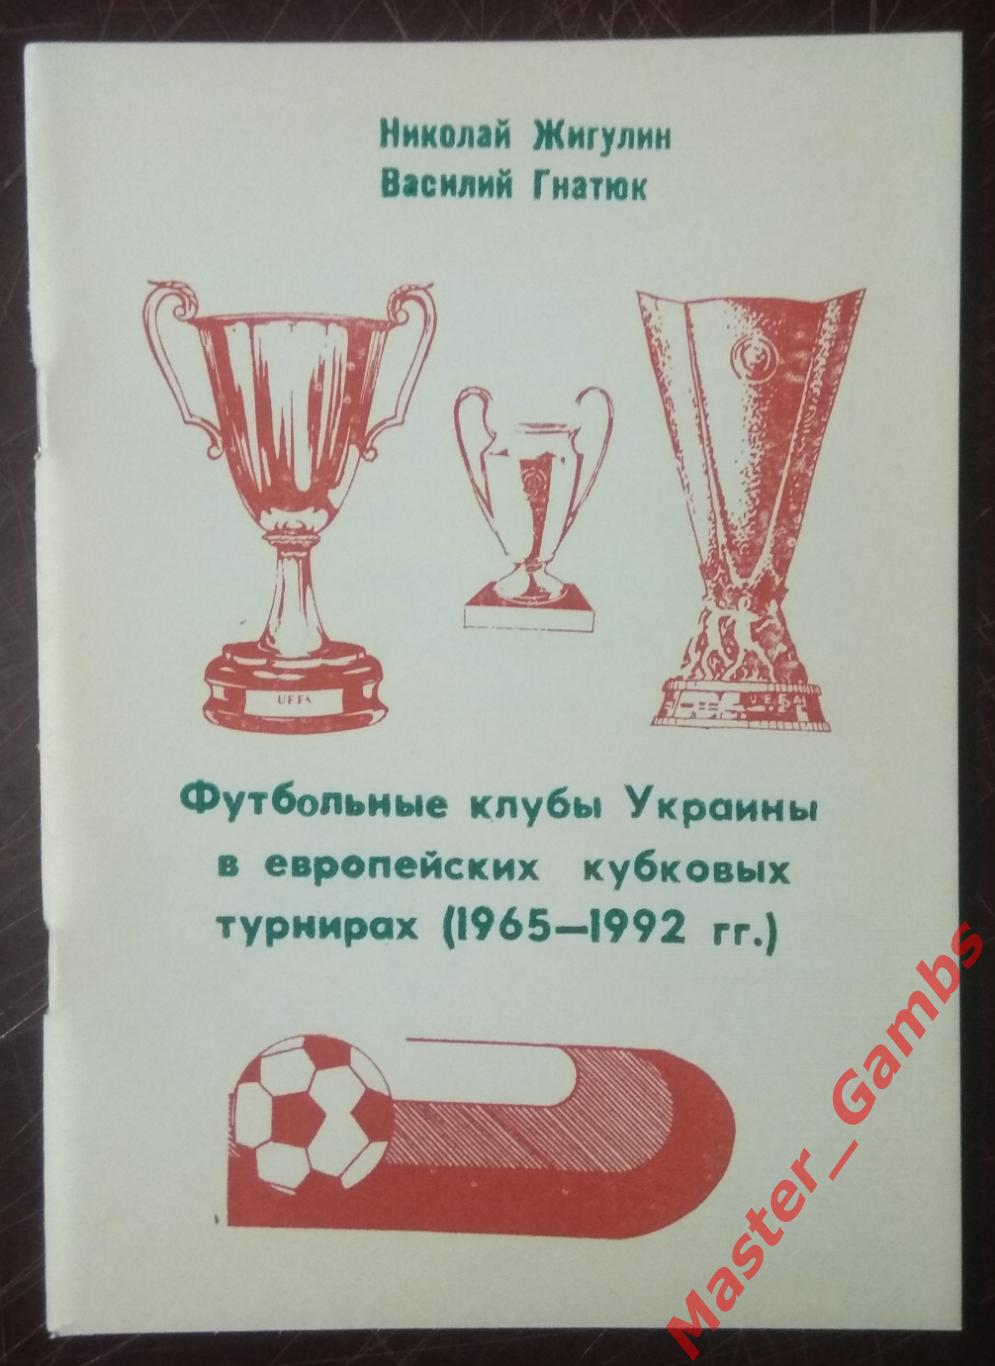 Гнатюк, Жигулин - Футбольные клубы Украины в еврокубках (1965 -1992 г.г.) 1995